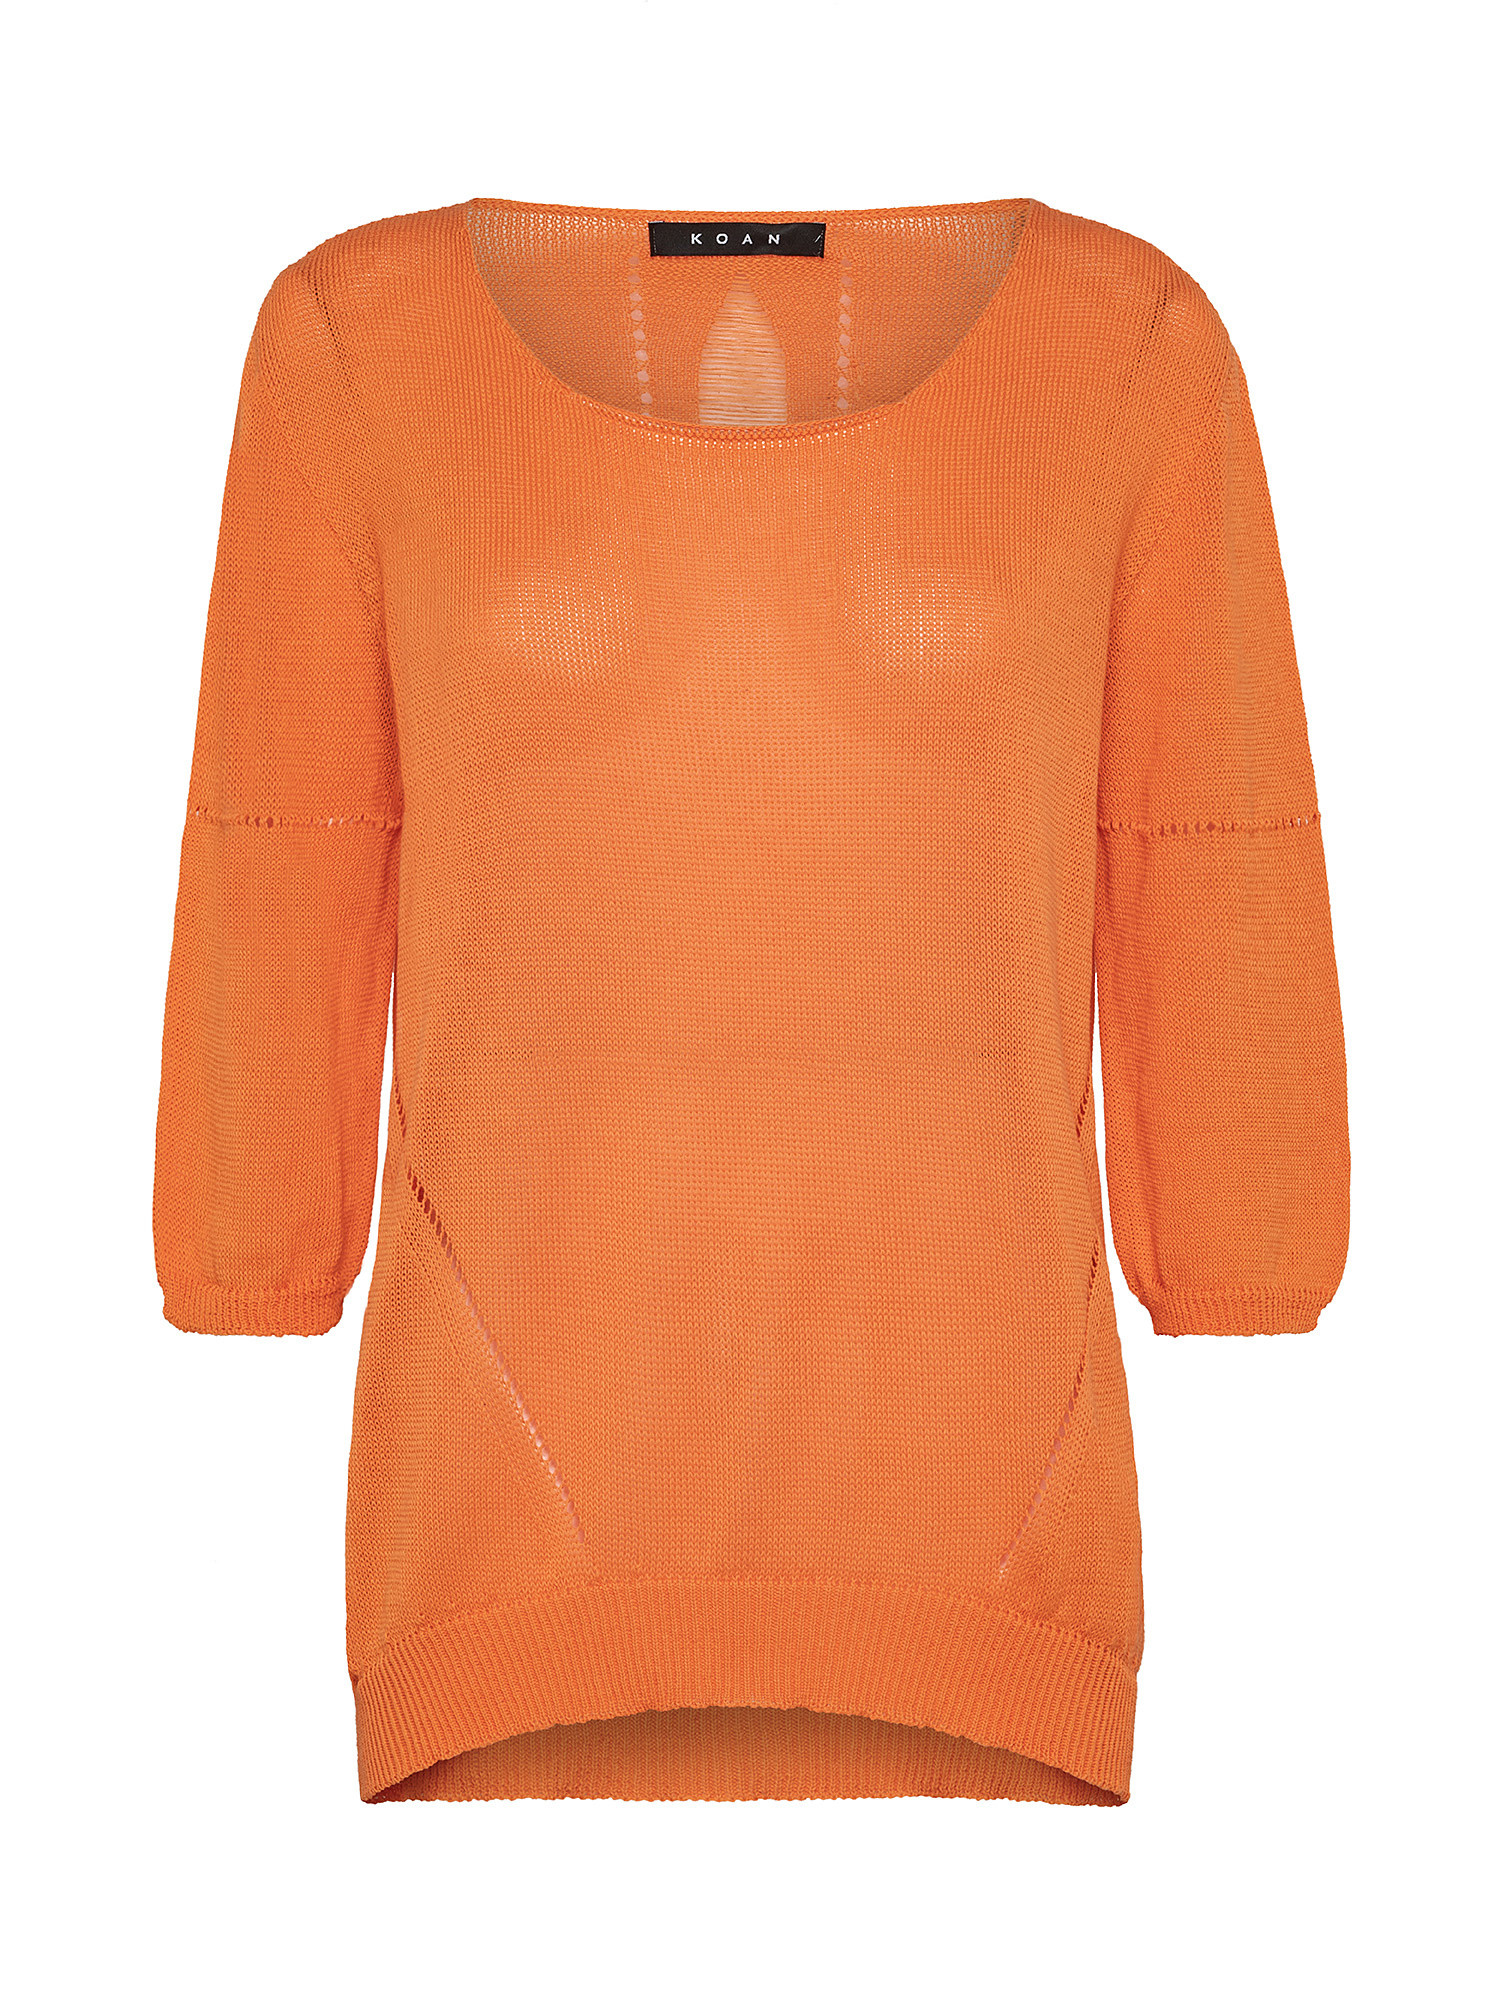 Maglia tricot, Arancione, large image number 0